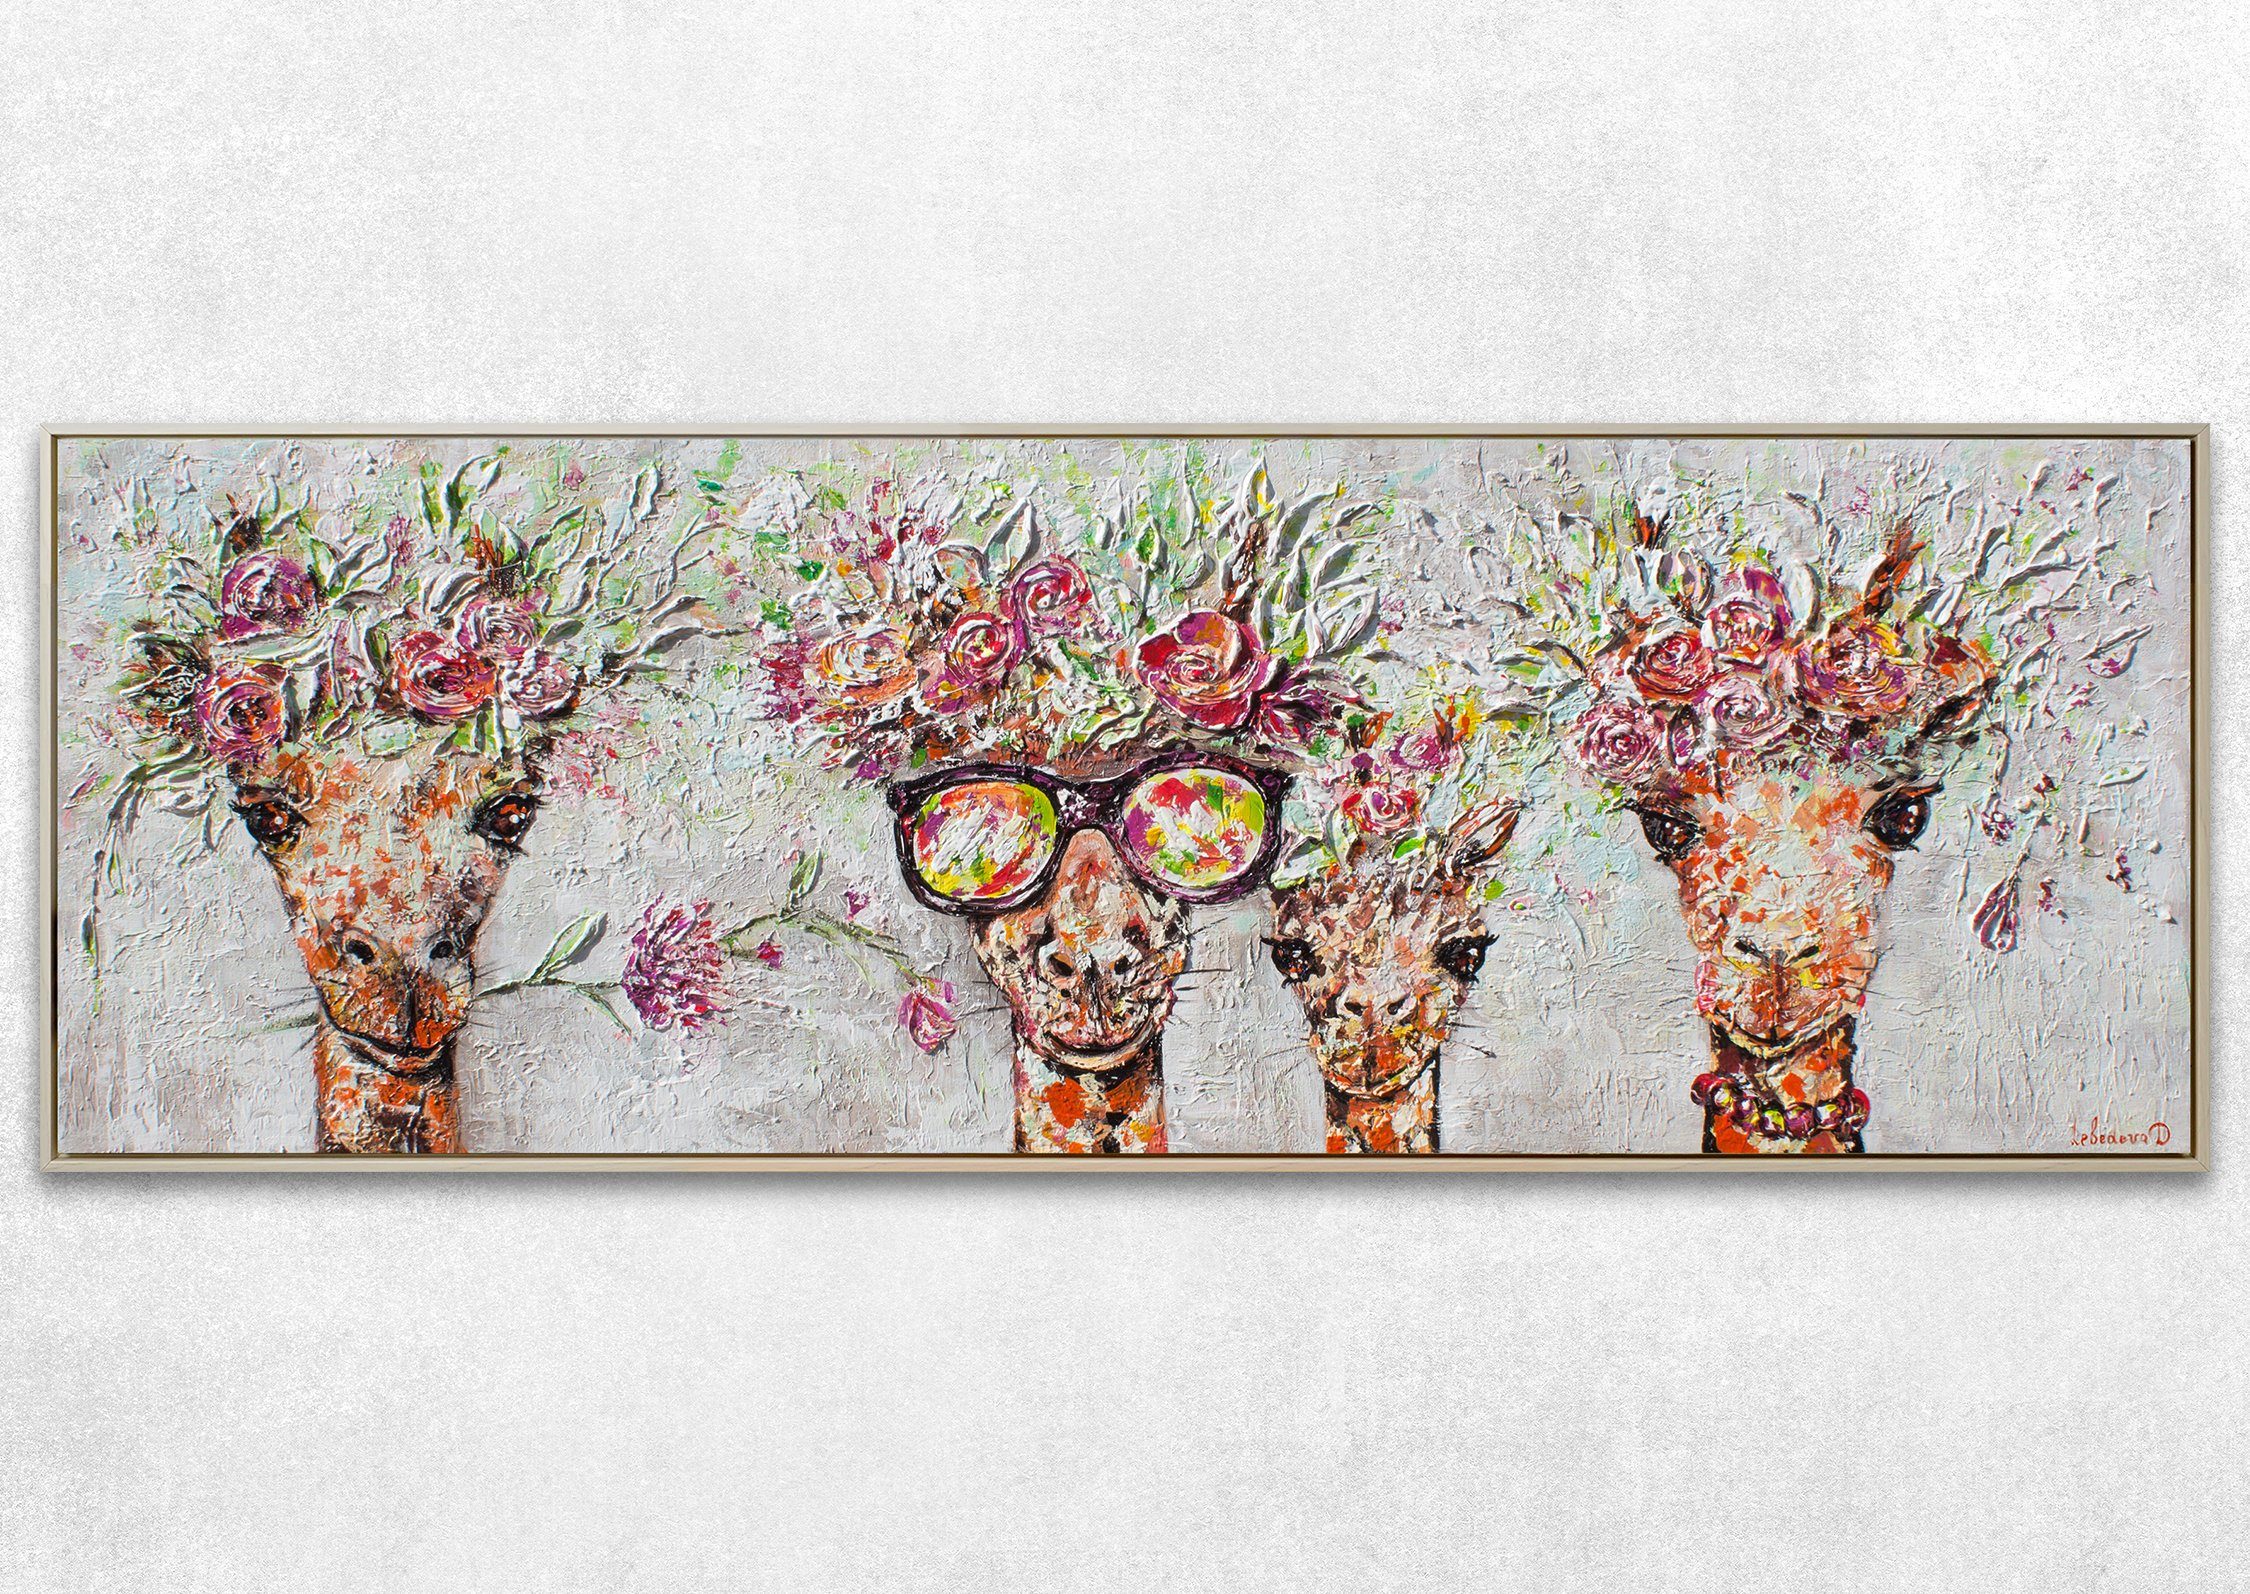 YS-Art in Mit Giraffen, Leinwand Braun Giraffen Brille Bunte Bild Blumen Rahmen Gemälde Tierbilder, Beige Handgemalt